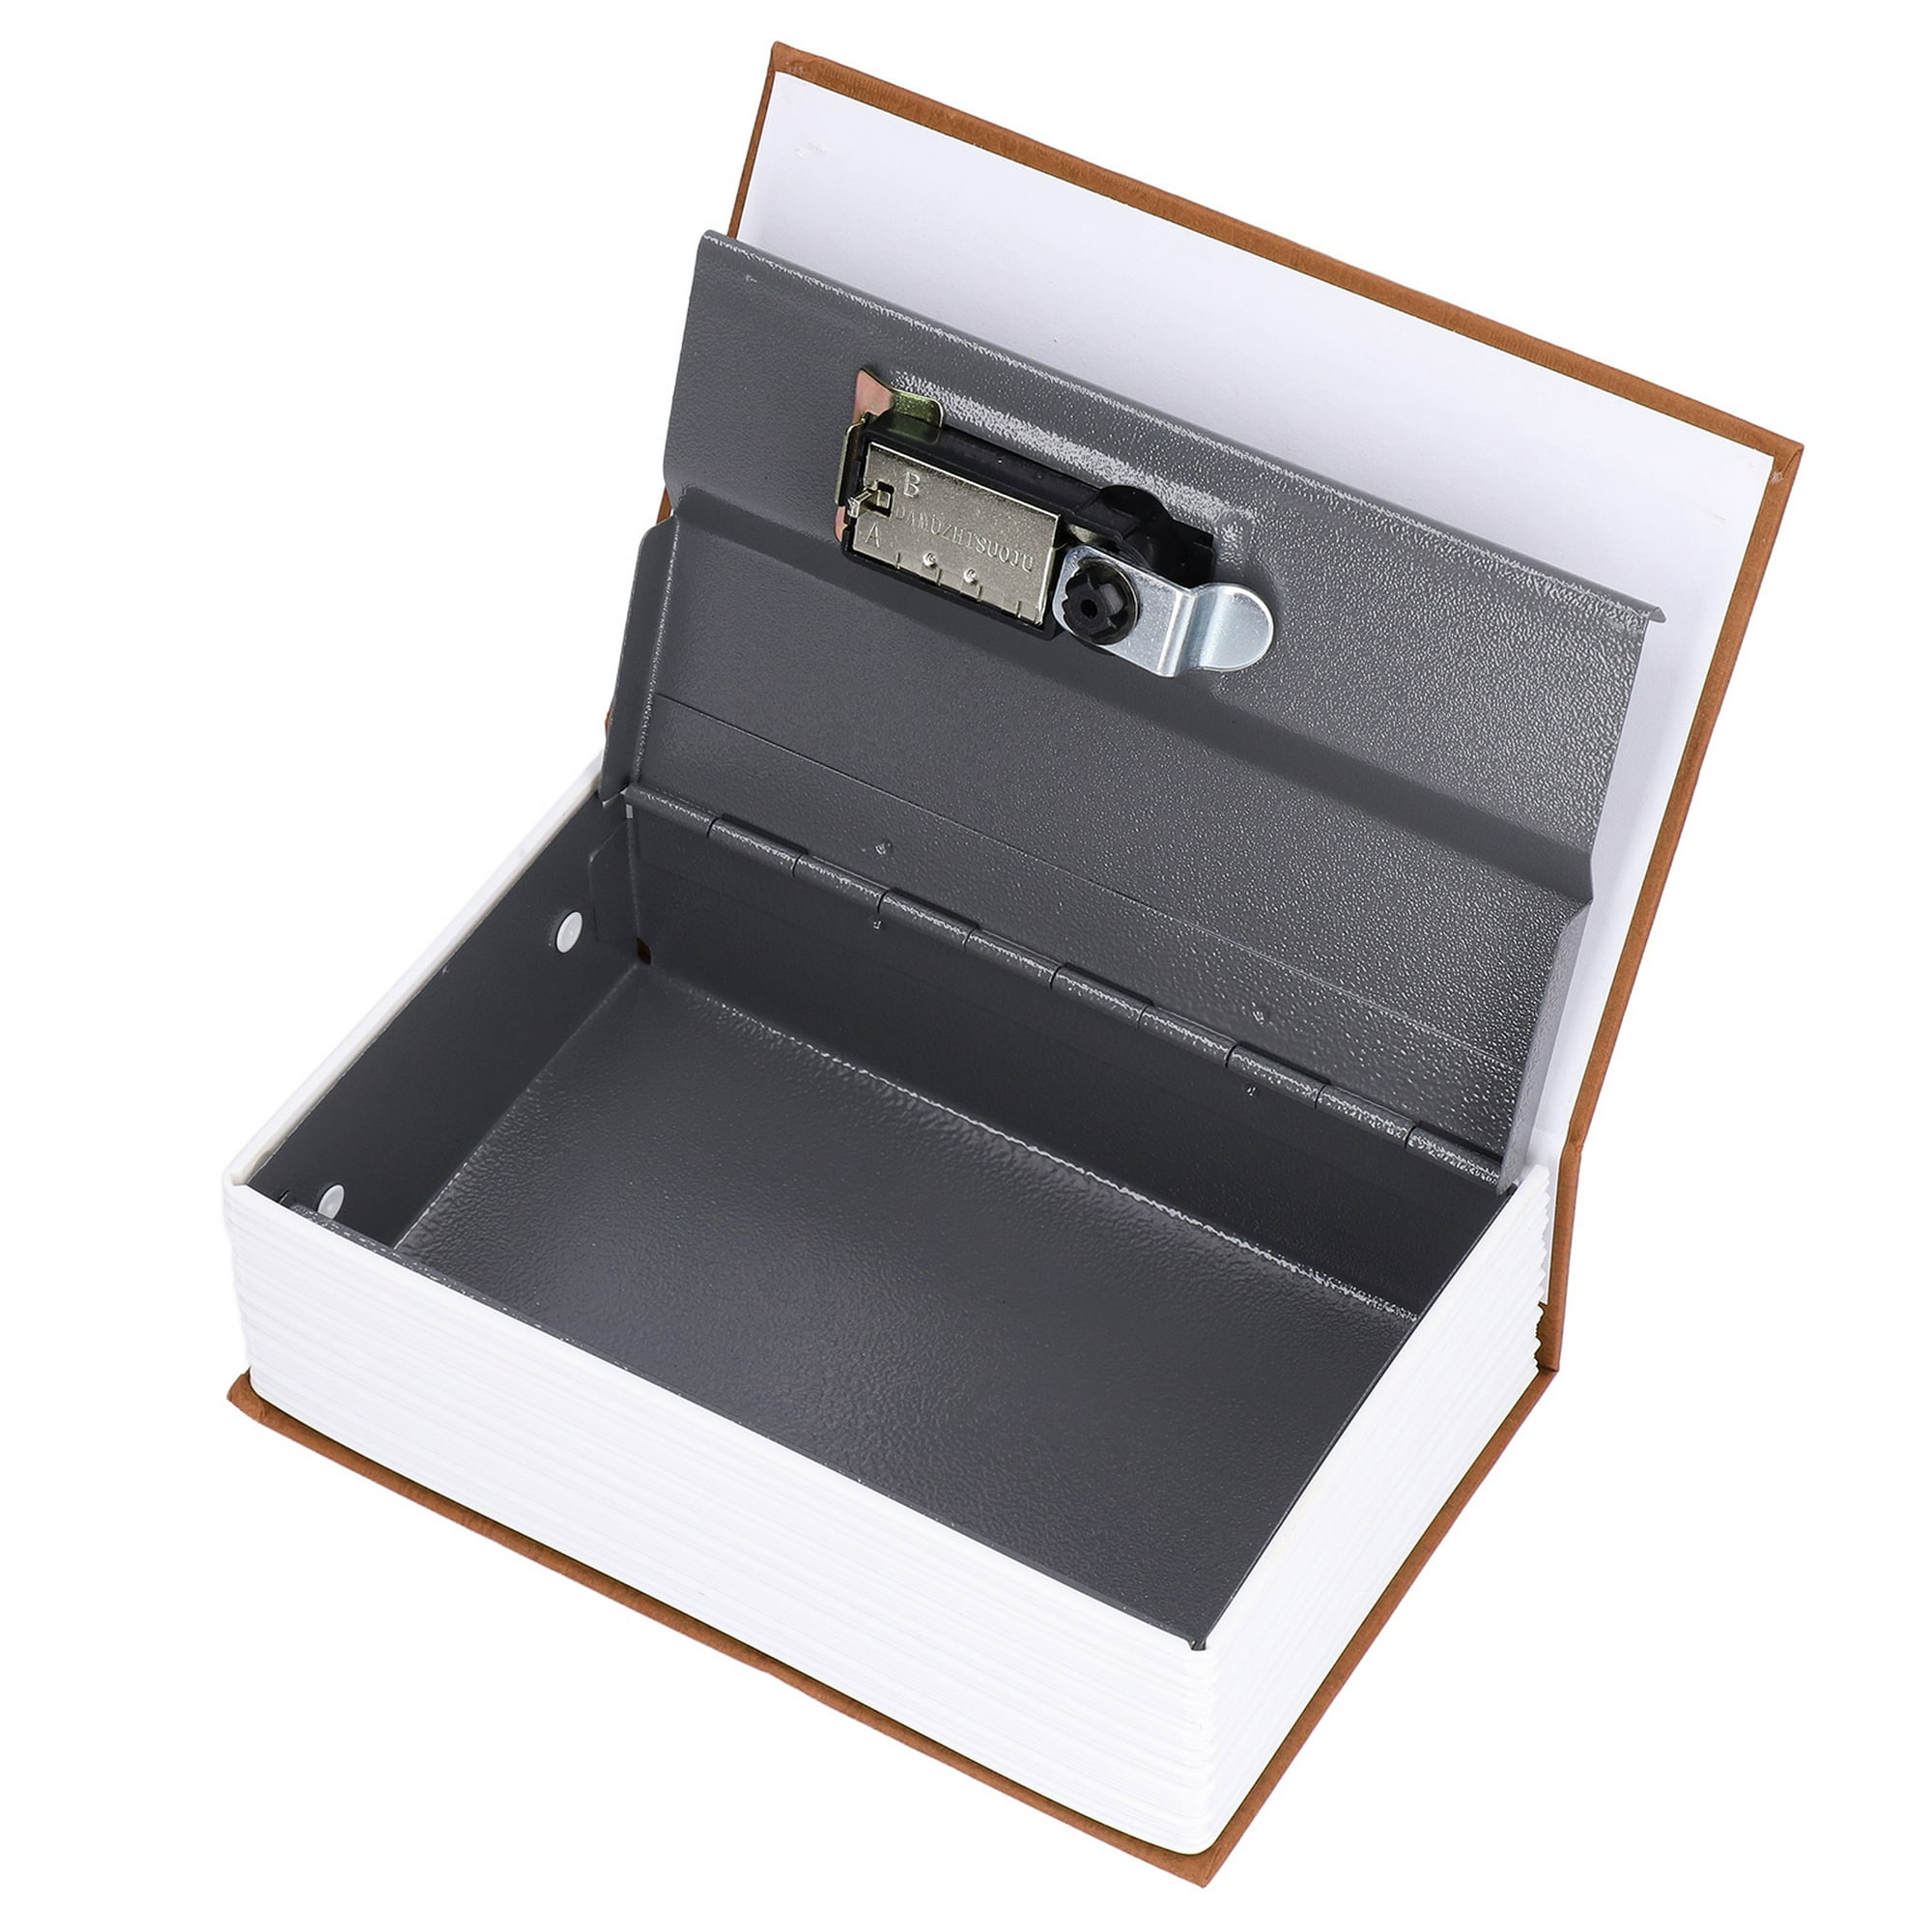 Caja fuerte para libros, caja fuerte de acero con forma de libro, caja  fuerte con forma de libro secreto, diseño fácil de usar Jadeshay A